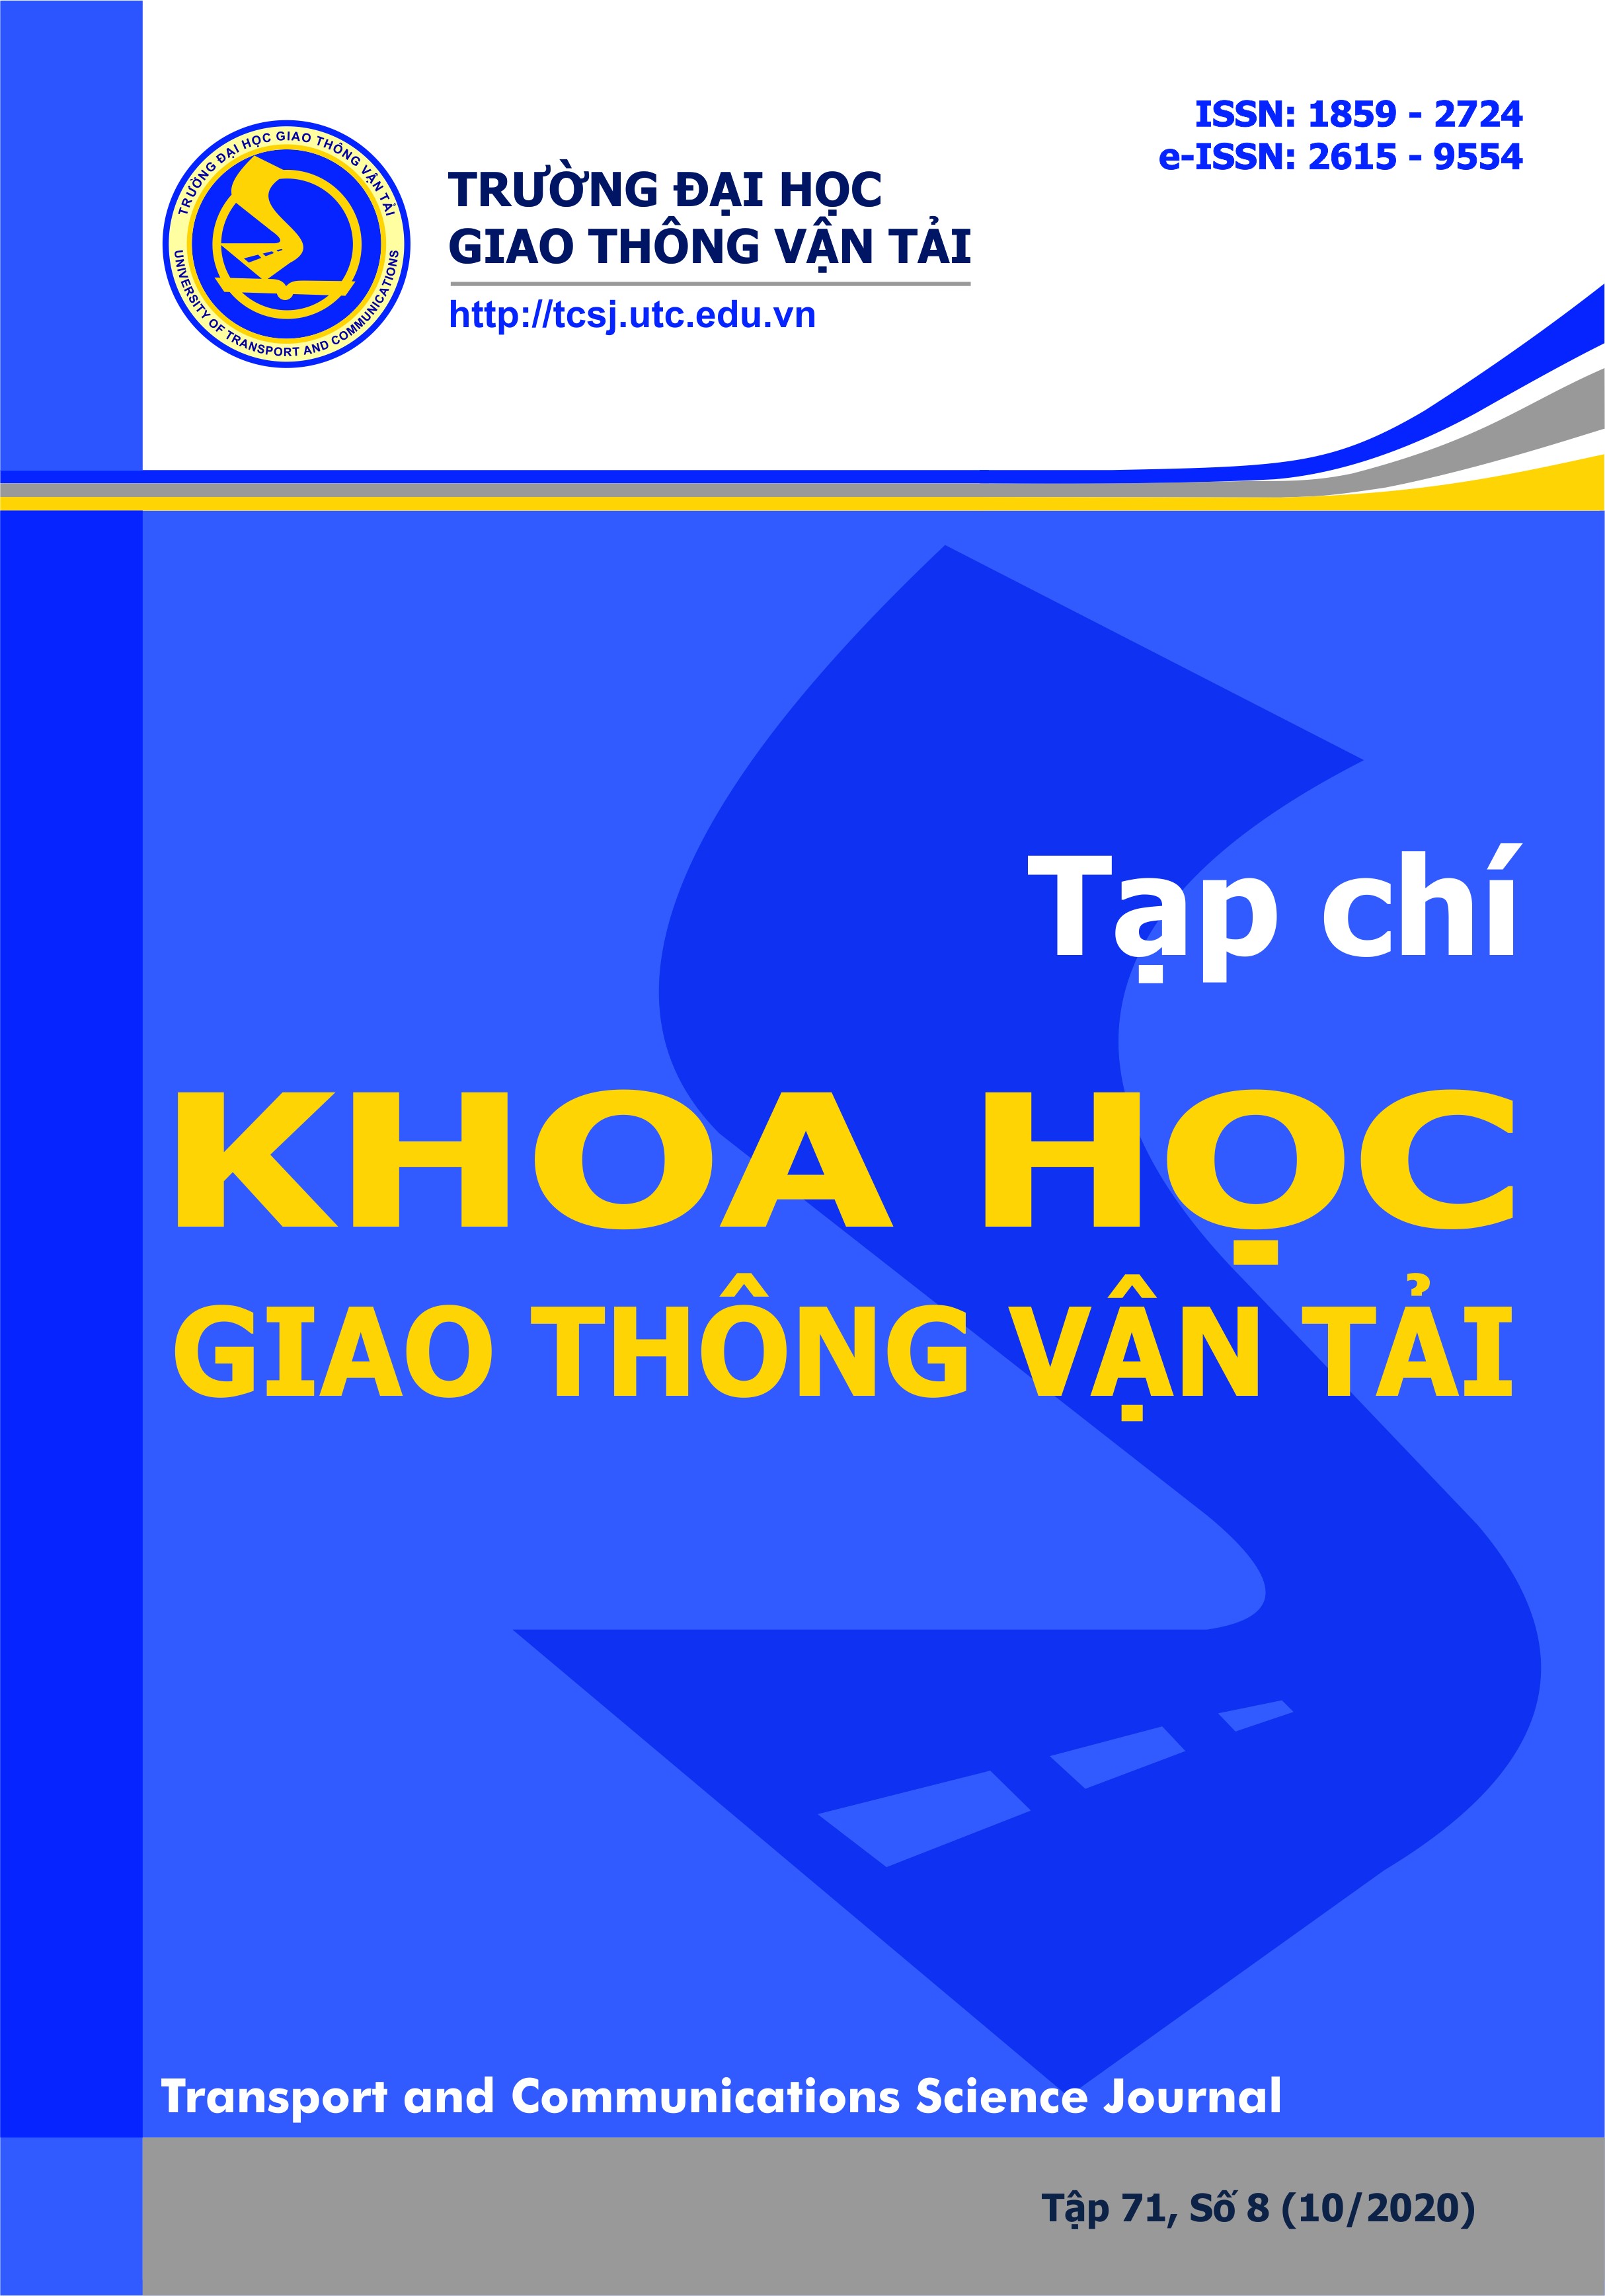 Phân tích hành vi lựa chọn phương tiện vận tải hành khách công cộng bằng xe buýt trong đô thị -  nghiên cứu điển hình cho Thủ đô Hà Nội